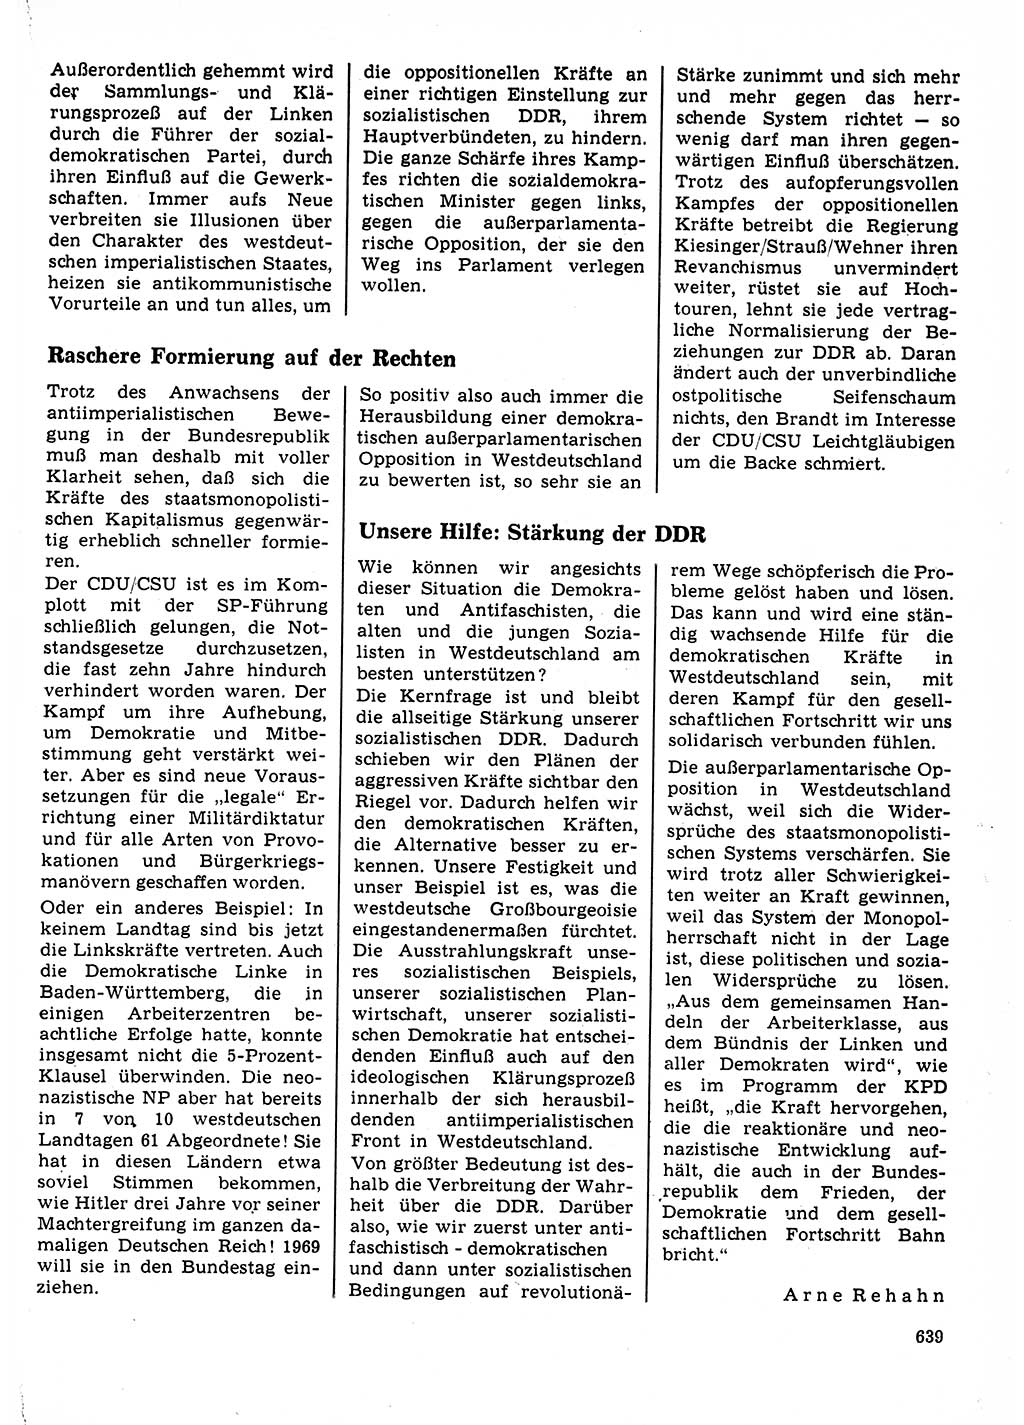 Neuer Weg (NW), Organ des Zentralkomitees (ZK) der SED (Sozialistische Einheitspartei Deutschlands) für Fragen des Parteilebens, 23. Jahrgang [Deutsche Demokratische Republik (DDR)] 1968, Seite 639 (NW ZK SED DDR 1968, S. 639)